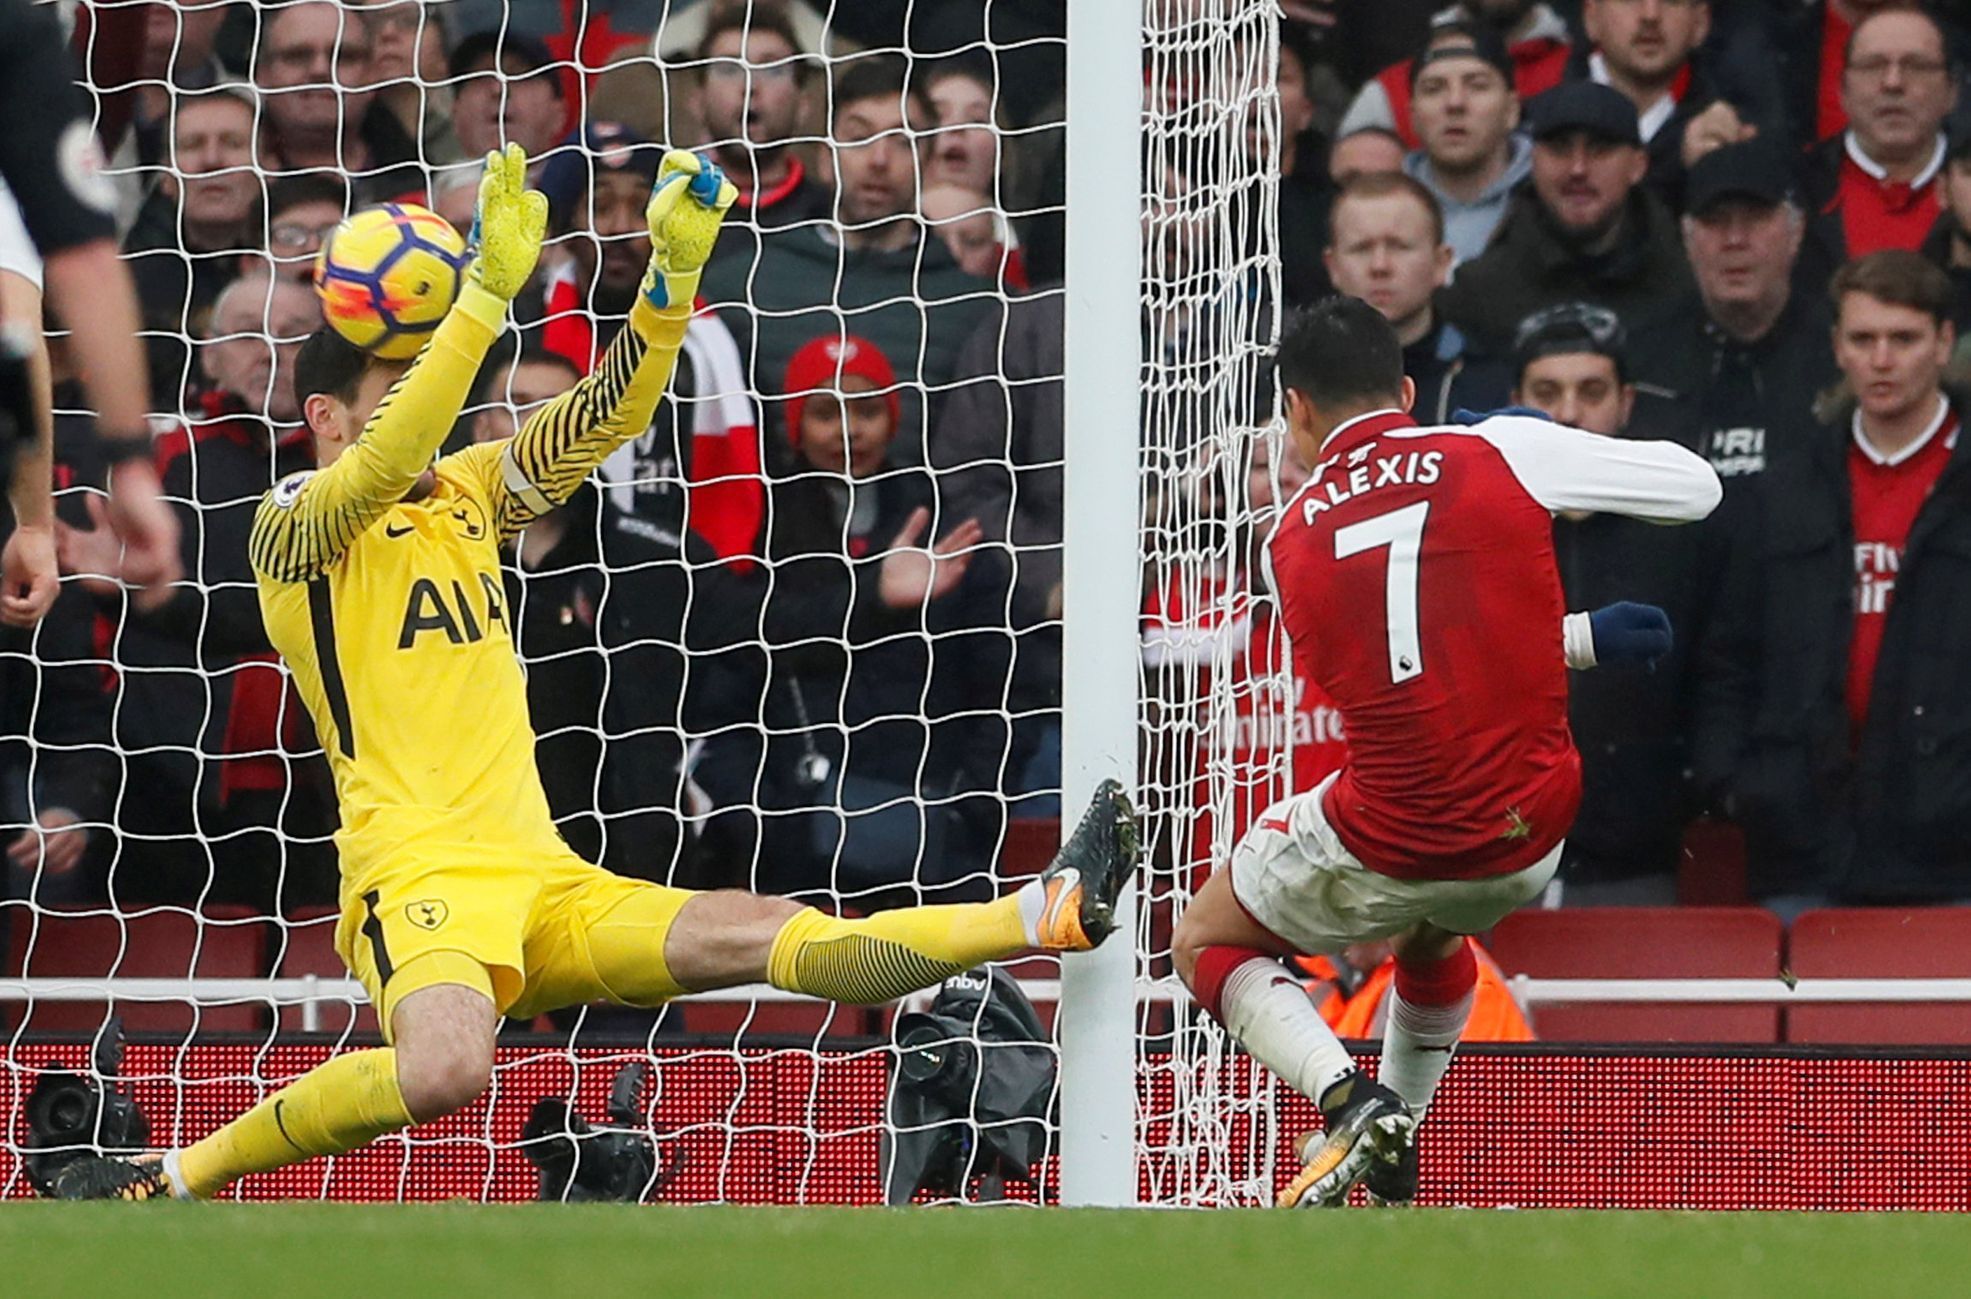 Arsenal - Tottenham: Gól Alexise Sáncheze